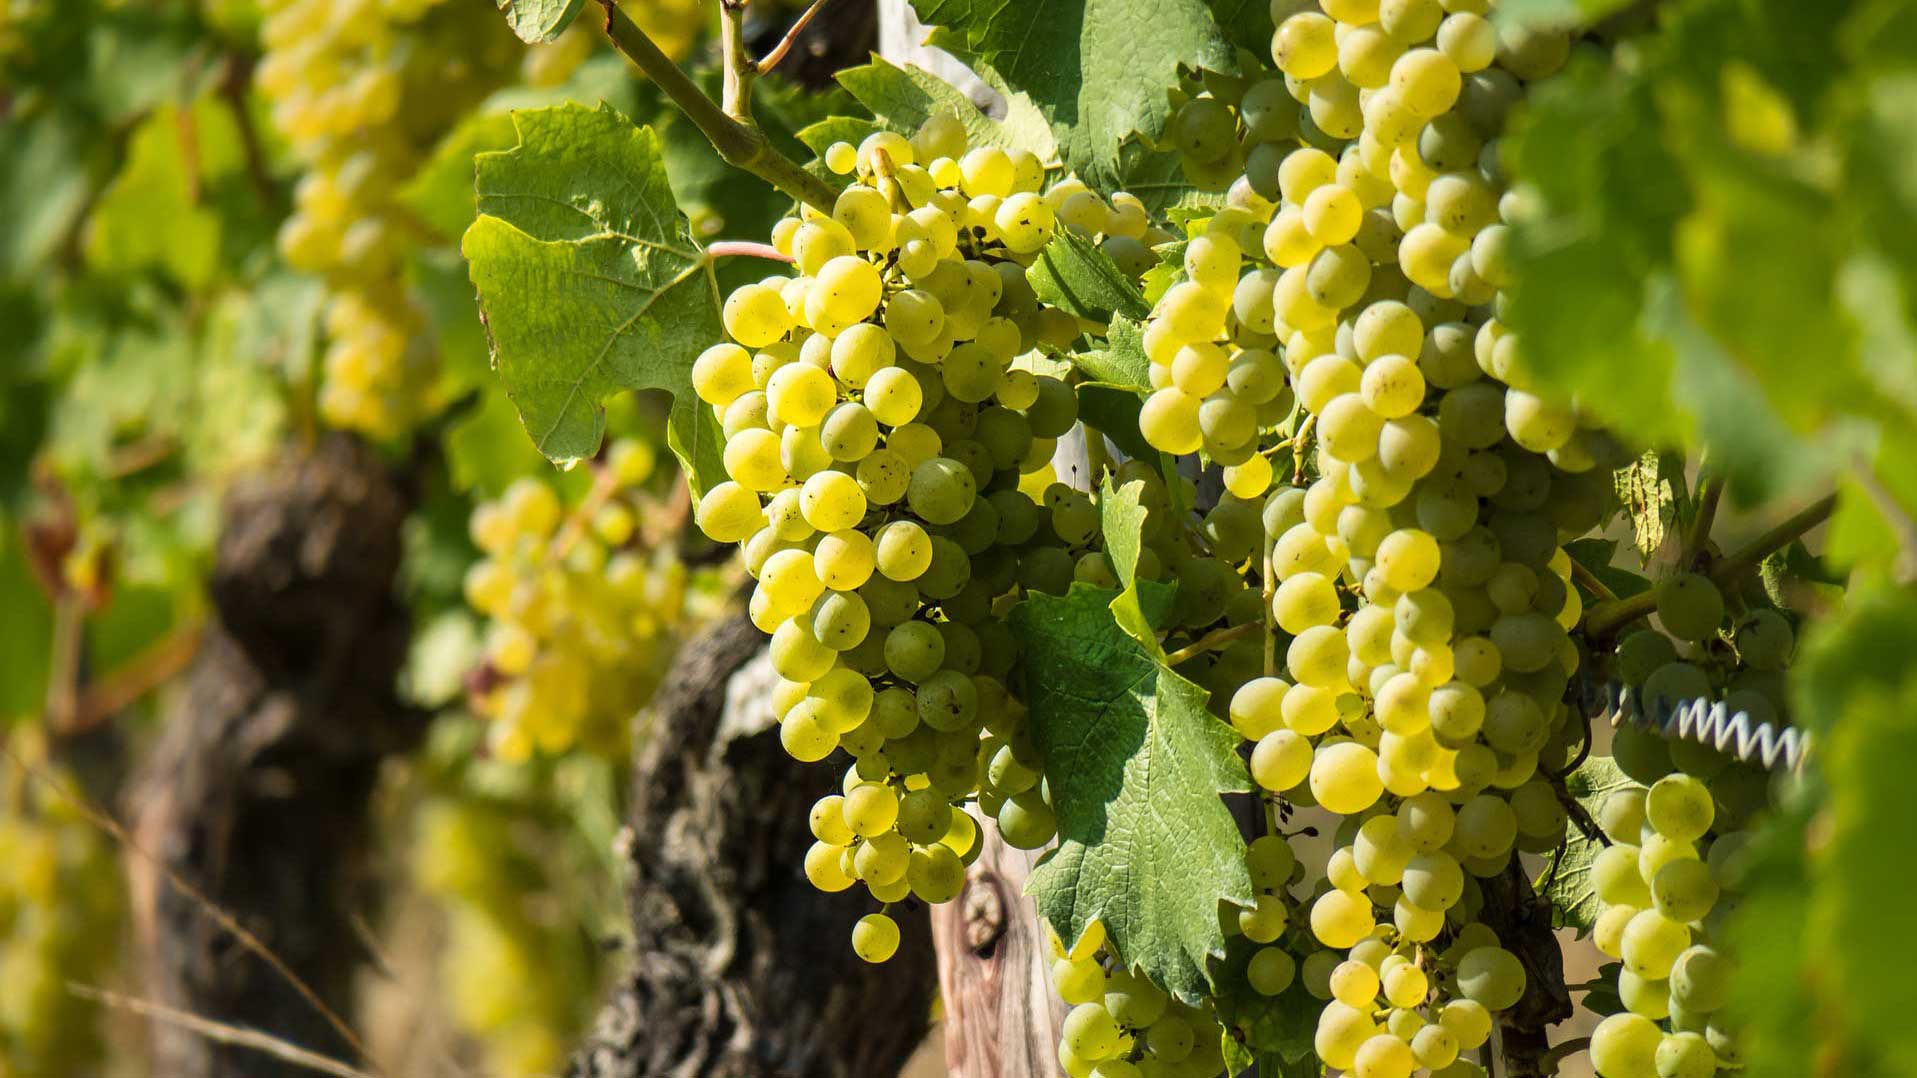 Macabeo, også kendt som Viura i nogle regioner, er en hvidvinsdrue, der dyrkes i Spanien og andre vinproducerende områder.